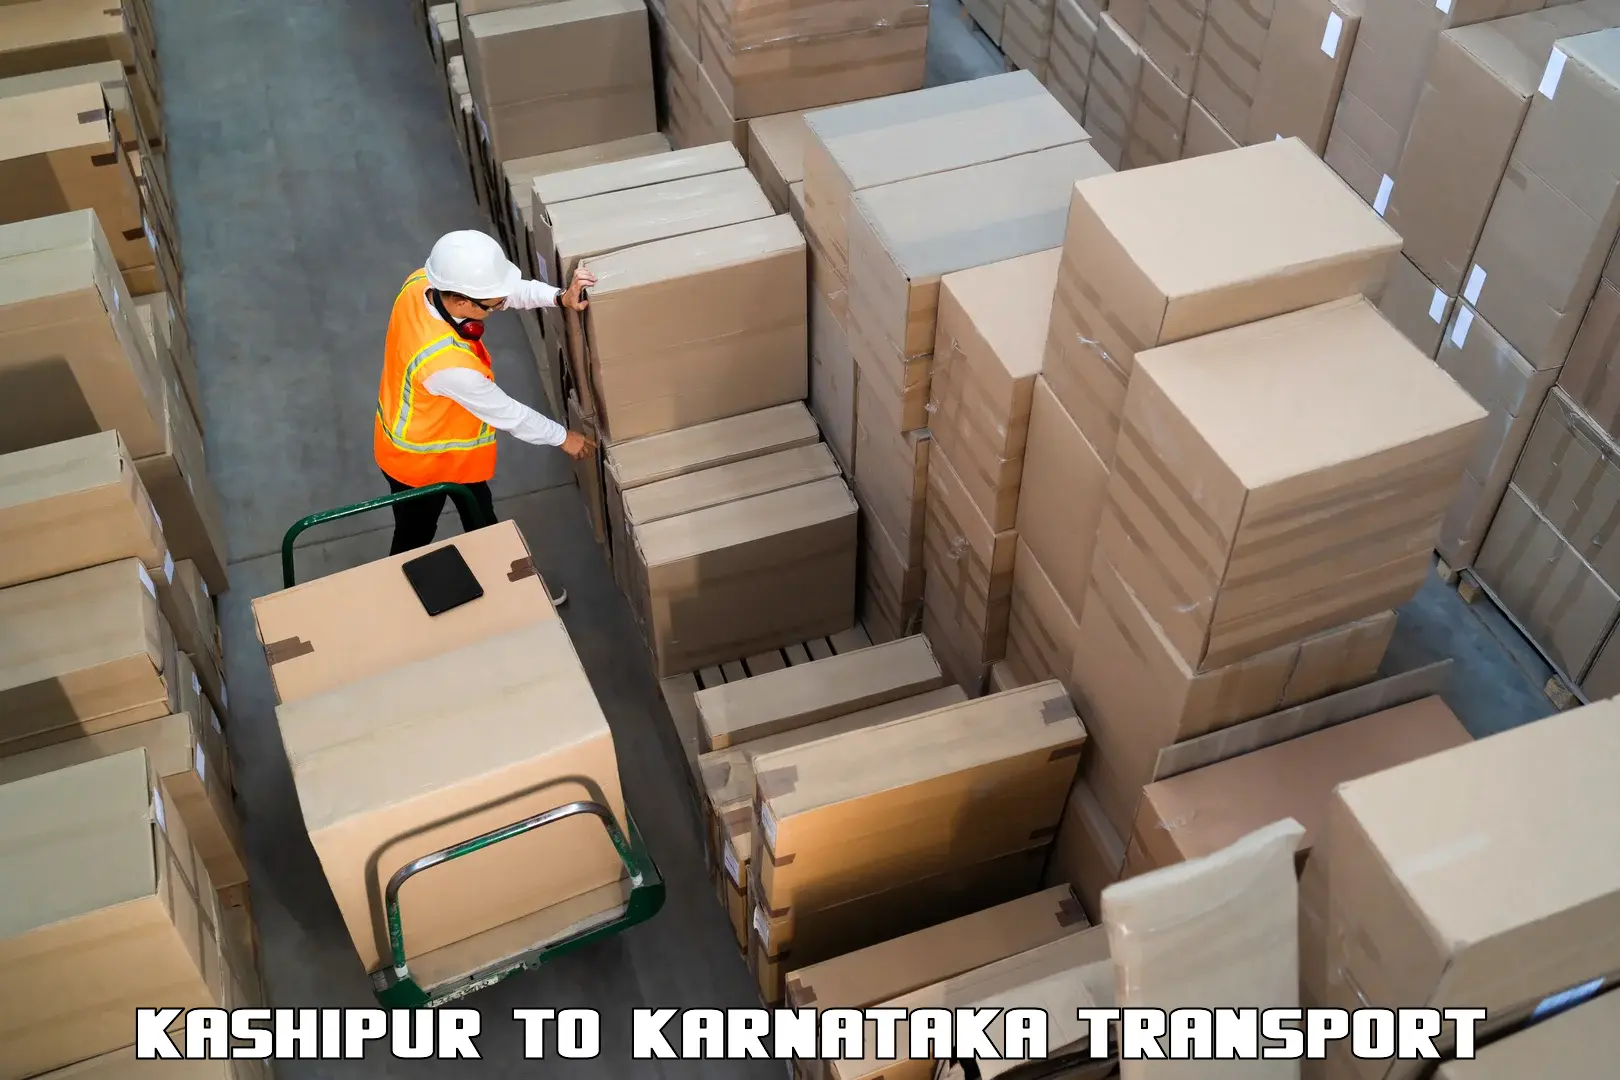 Online transport service Kashipur to Kunigal